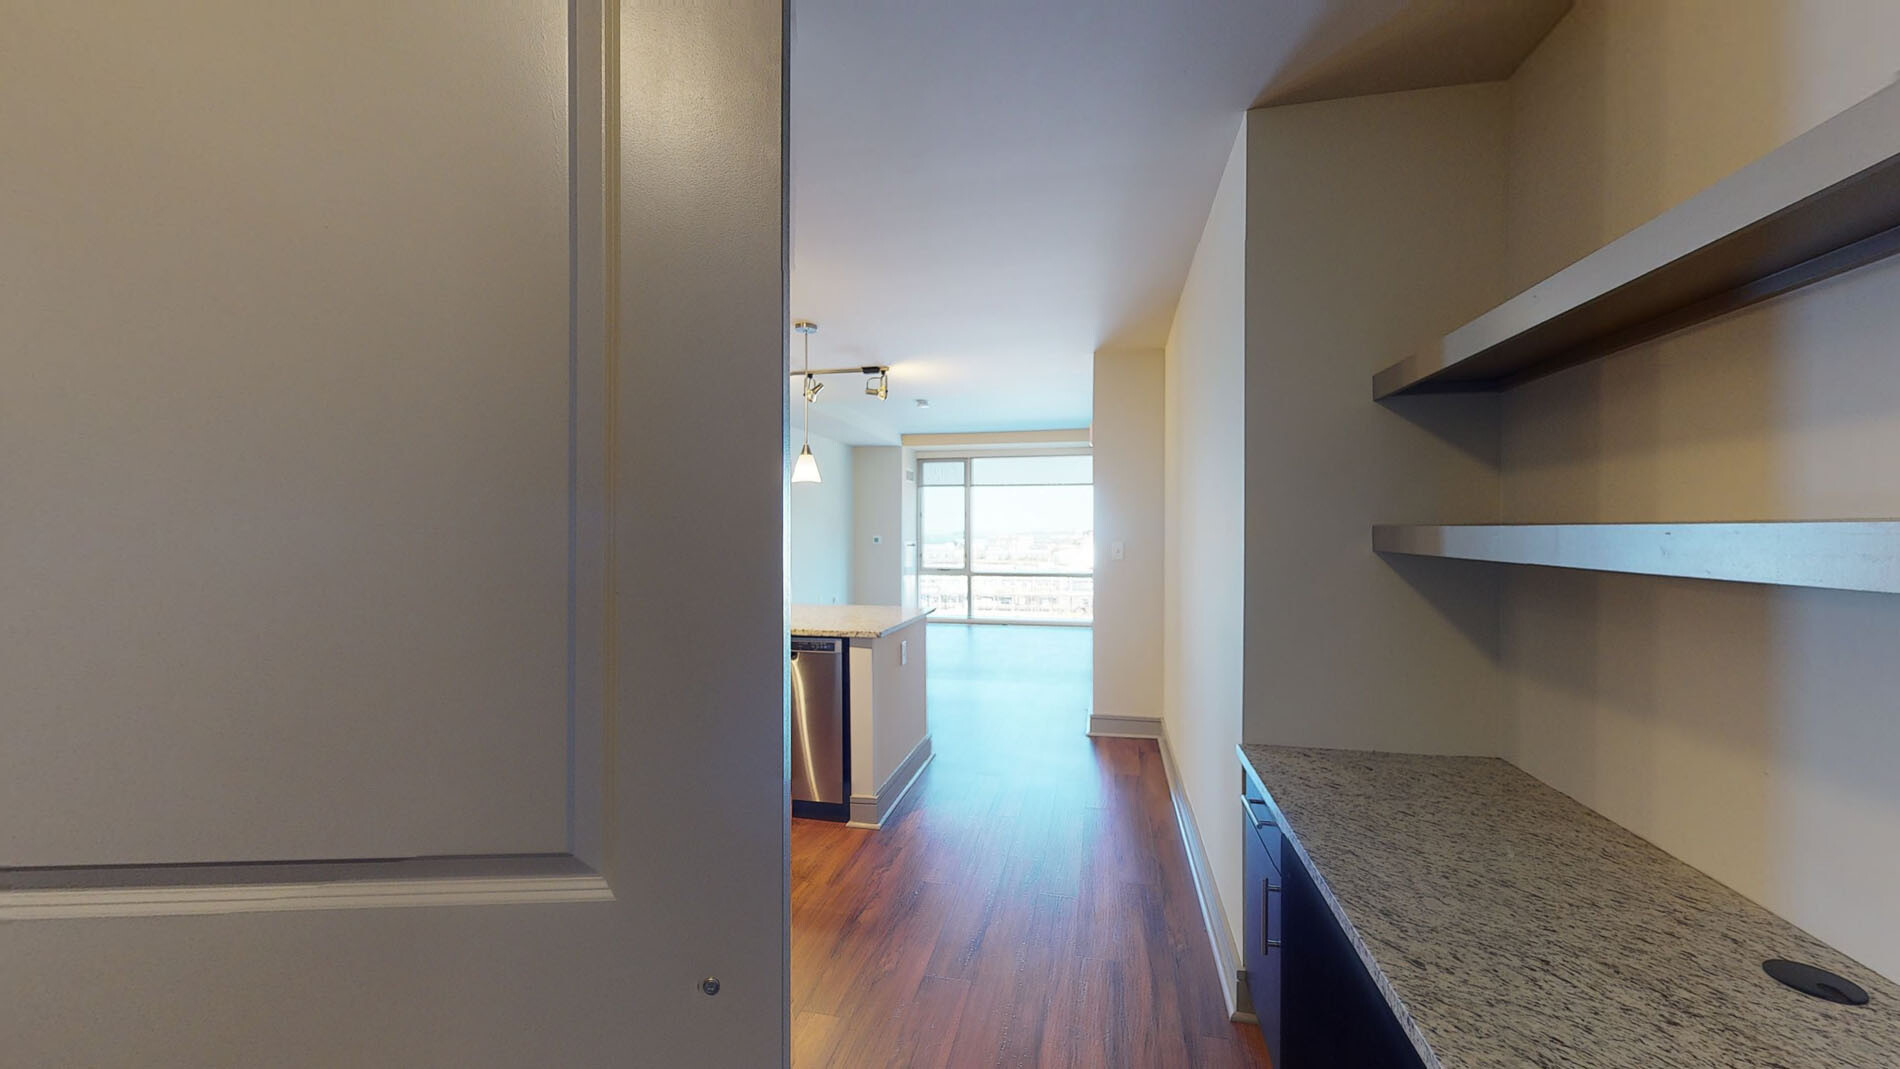 Photos of apartment on Seaport Blvd.,Boston MA 02210